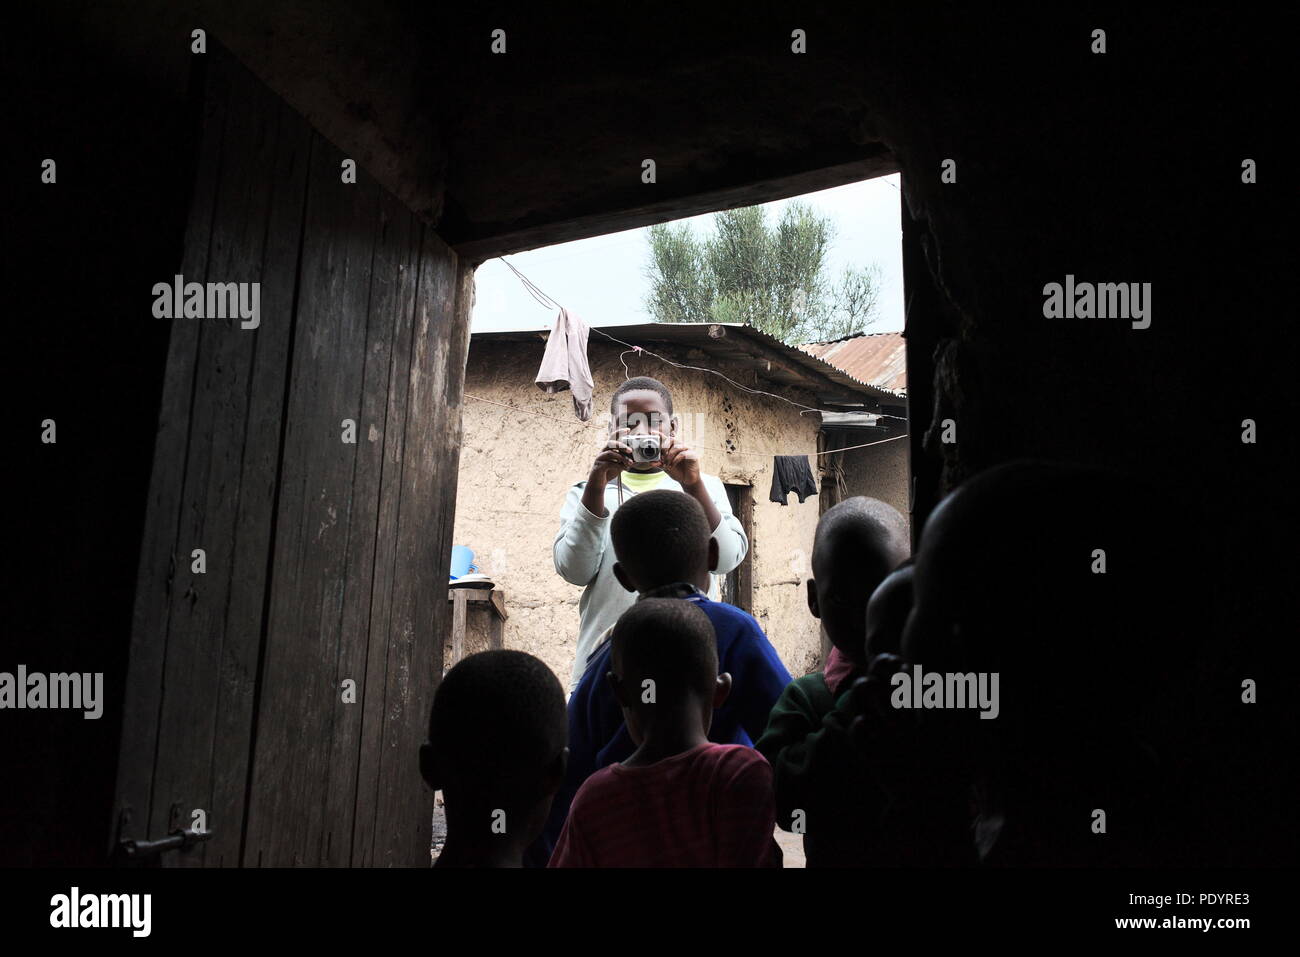 Giovane ragazza ugandese scatta una fotografia della sua famiglia nella comunità locale Foto Stock